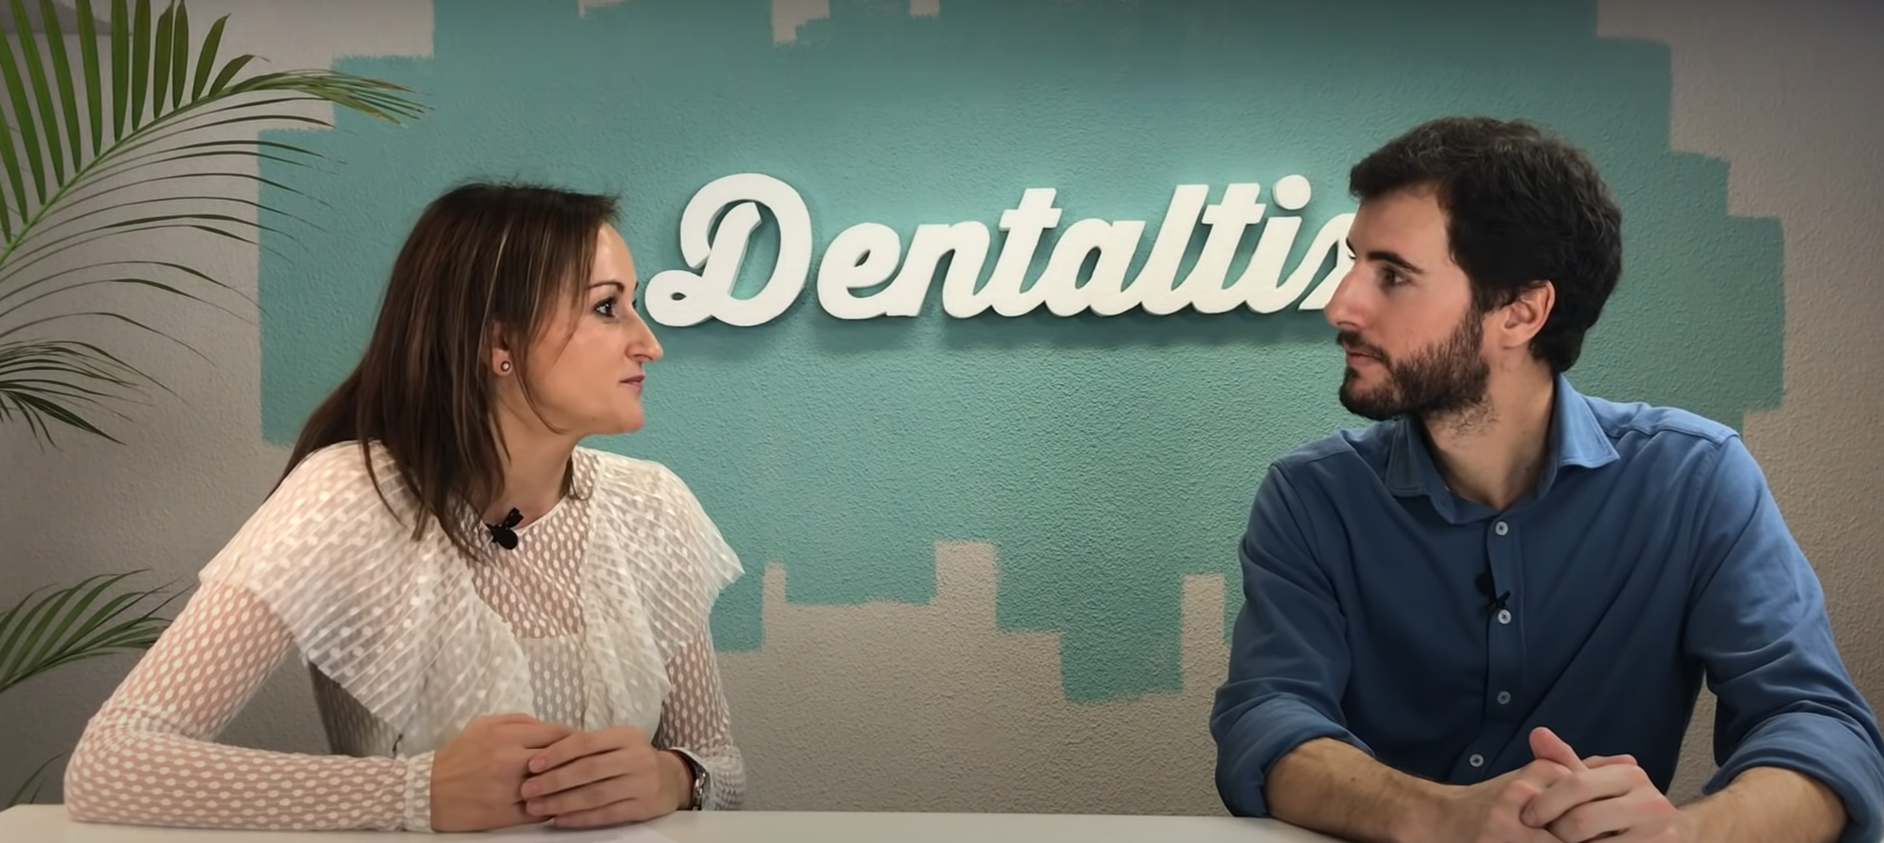 marketing digital pour les cliniques dentaires